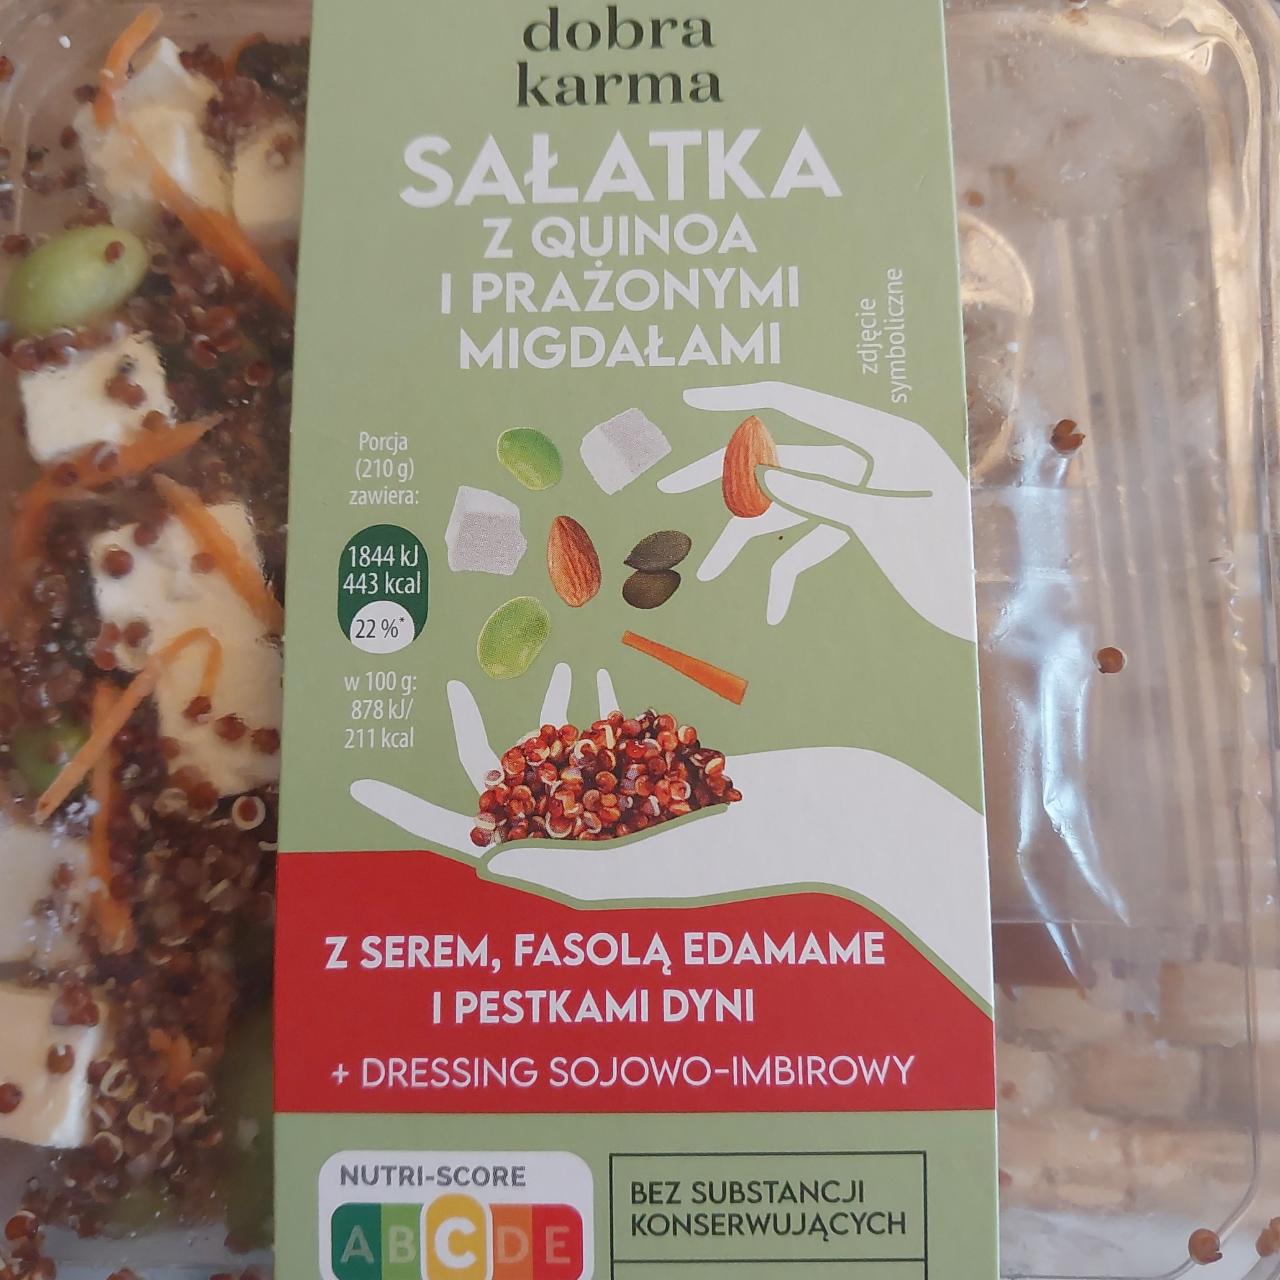 Zdjęcia - Sałatka z quinoa i prażonymi migdałami Dobra karma